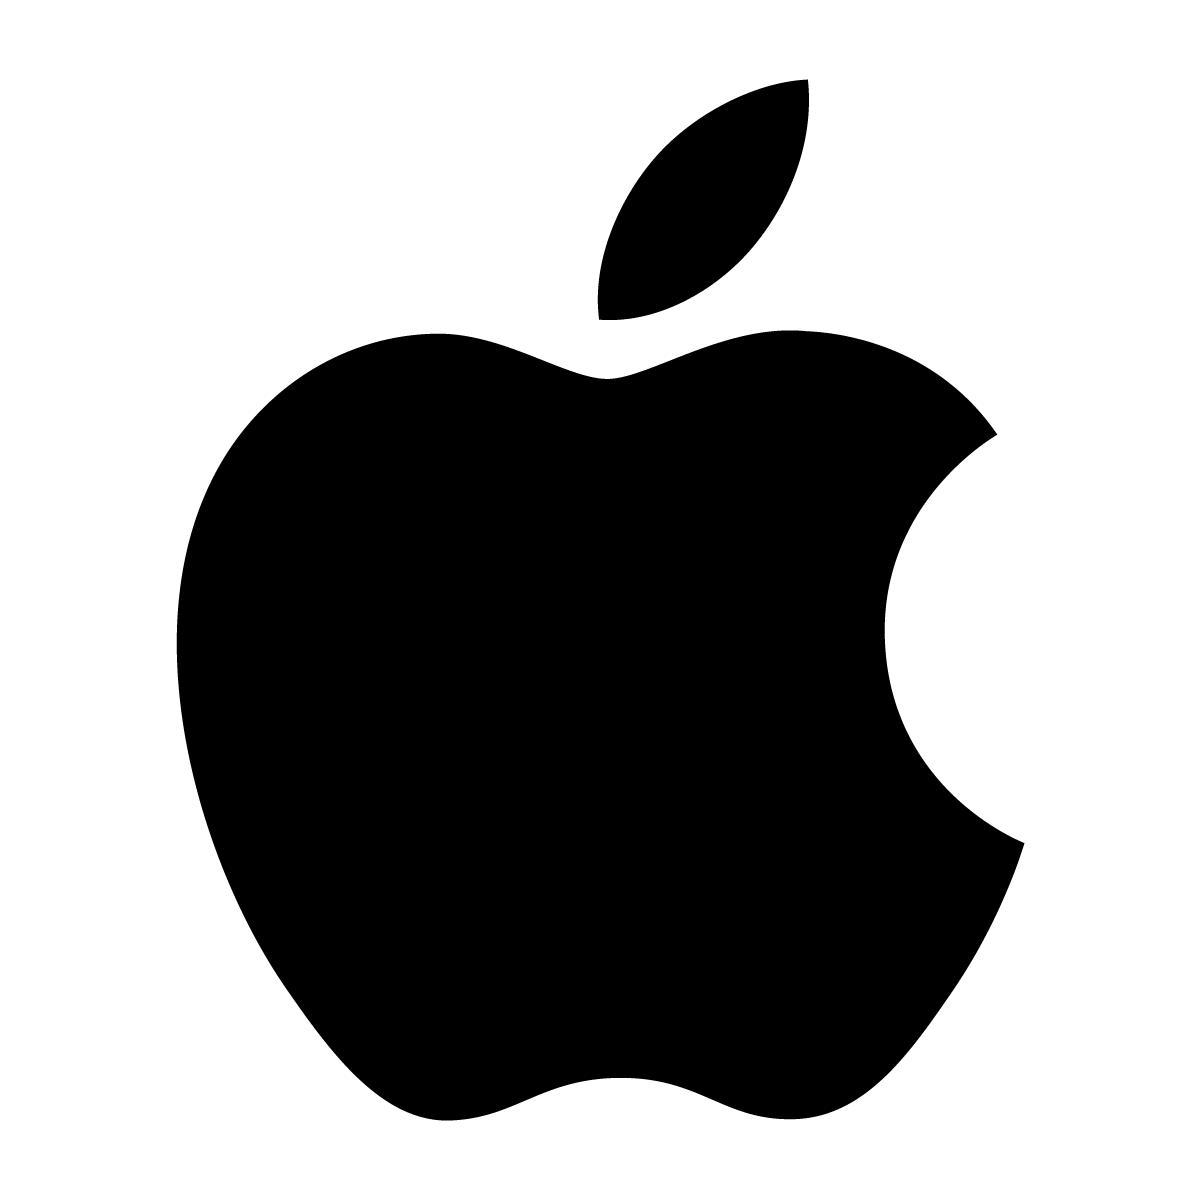 苹果公司 (Apple Inc.)